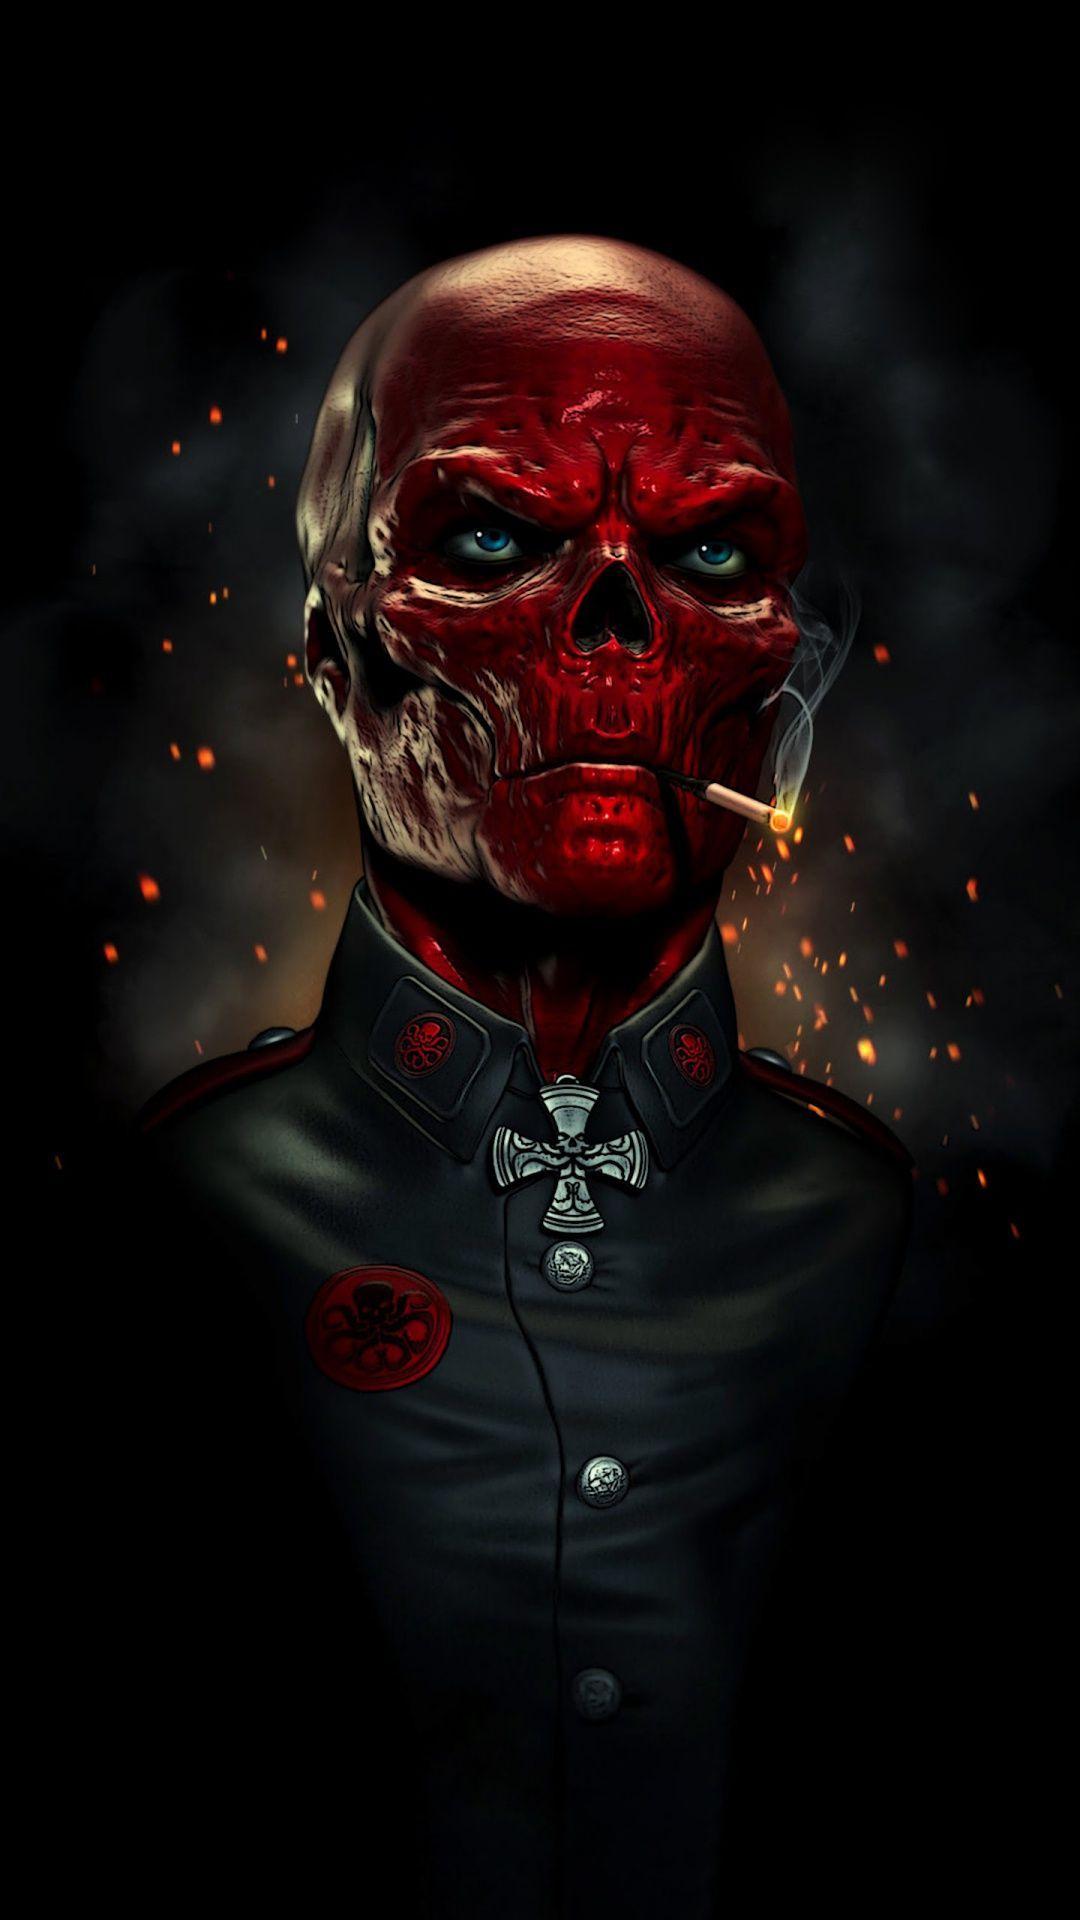 کله سرخ (Red Skull)